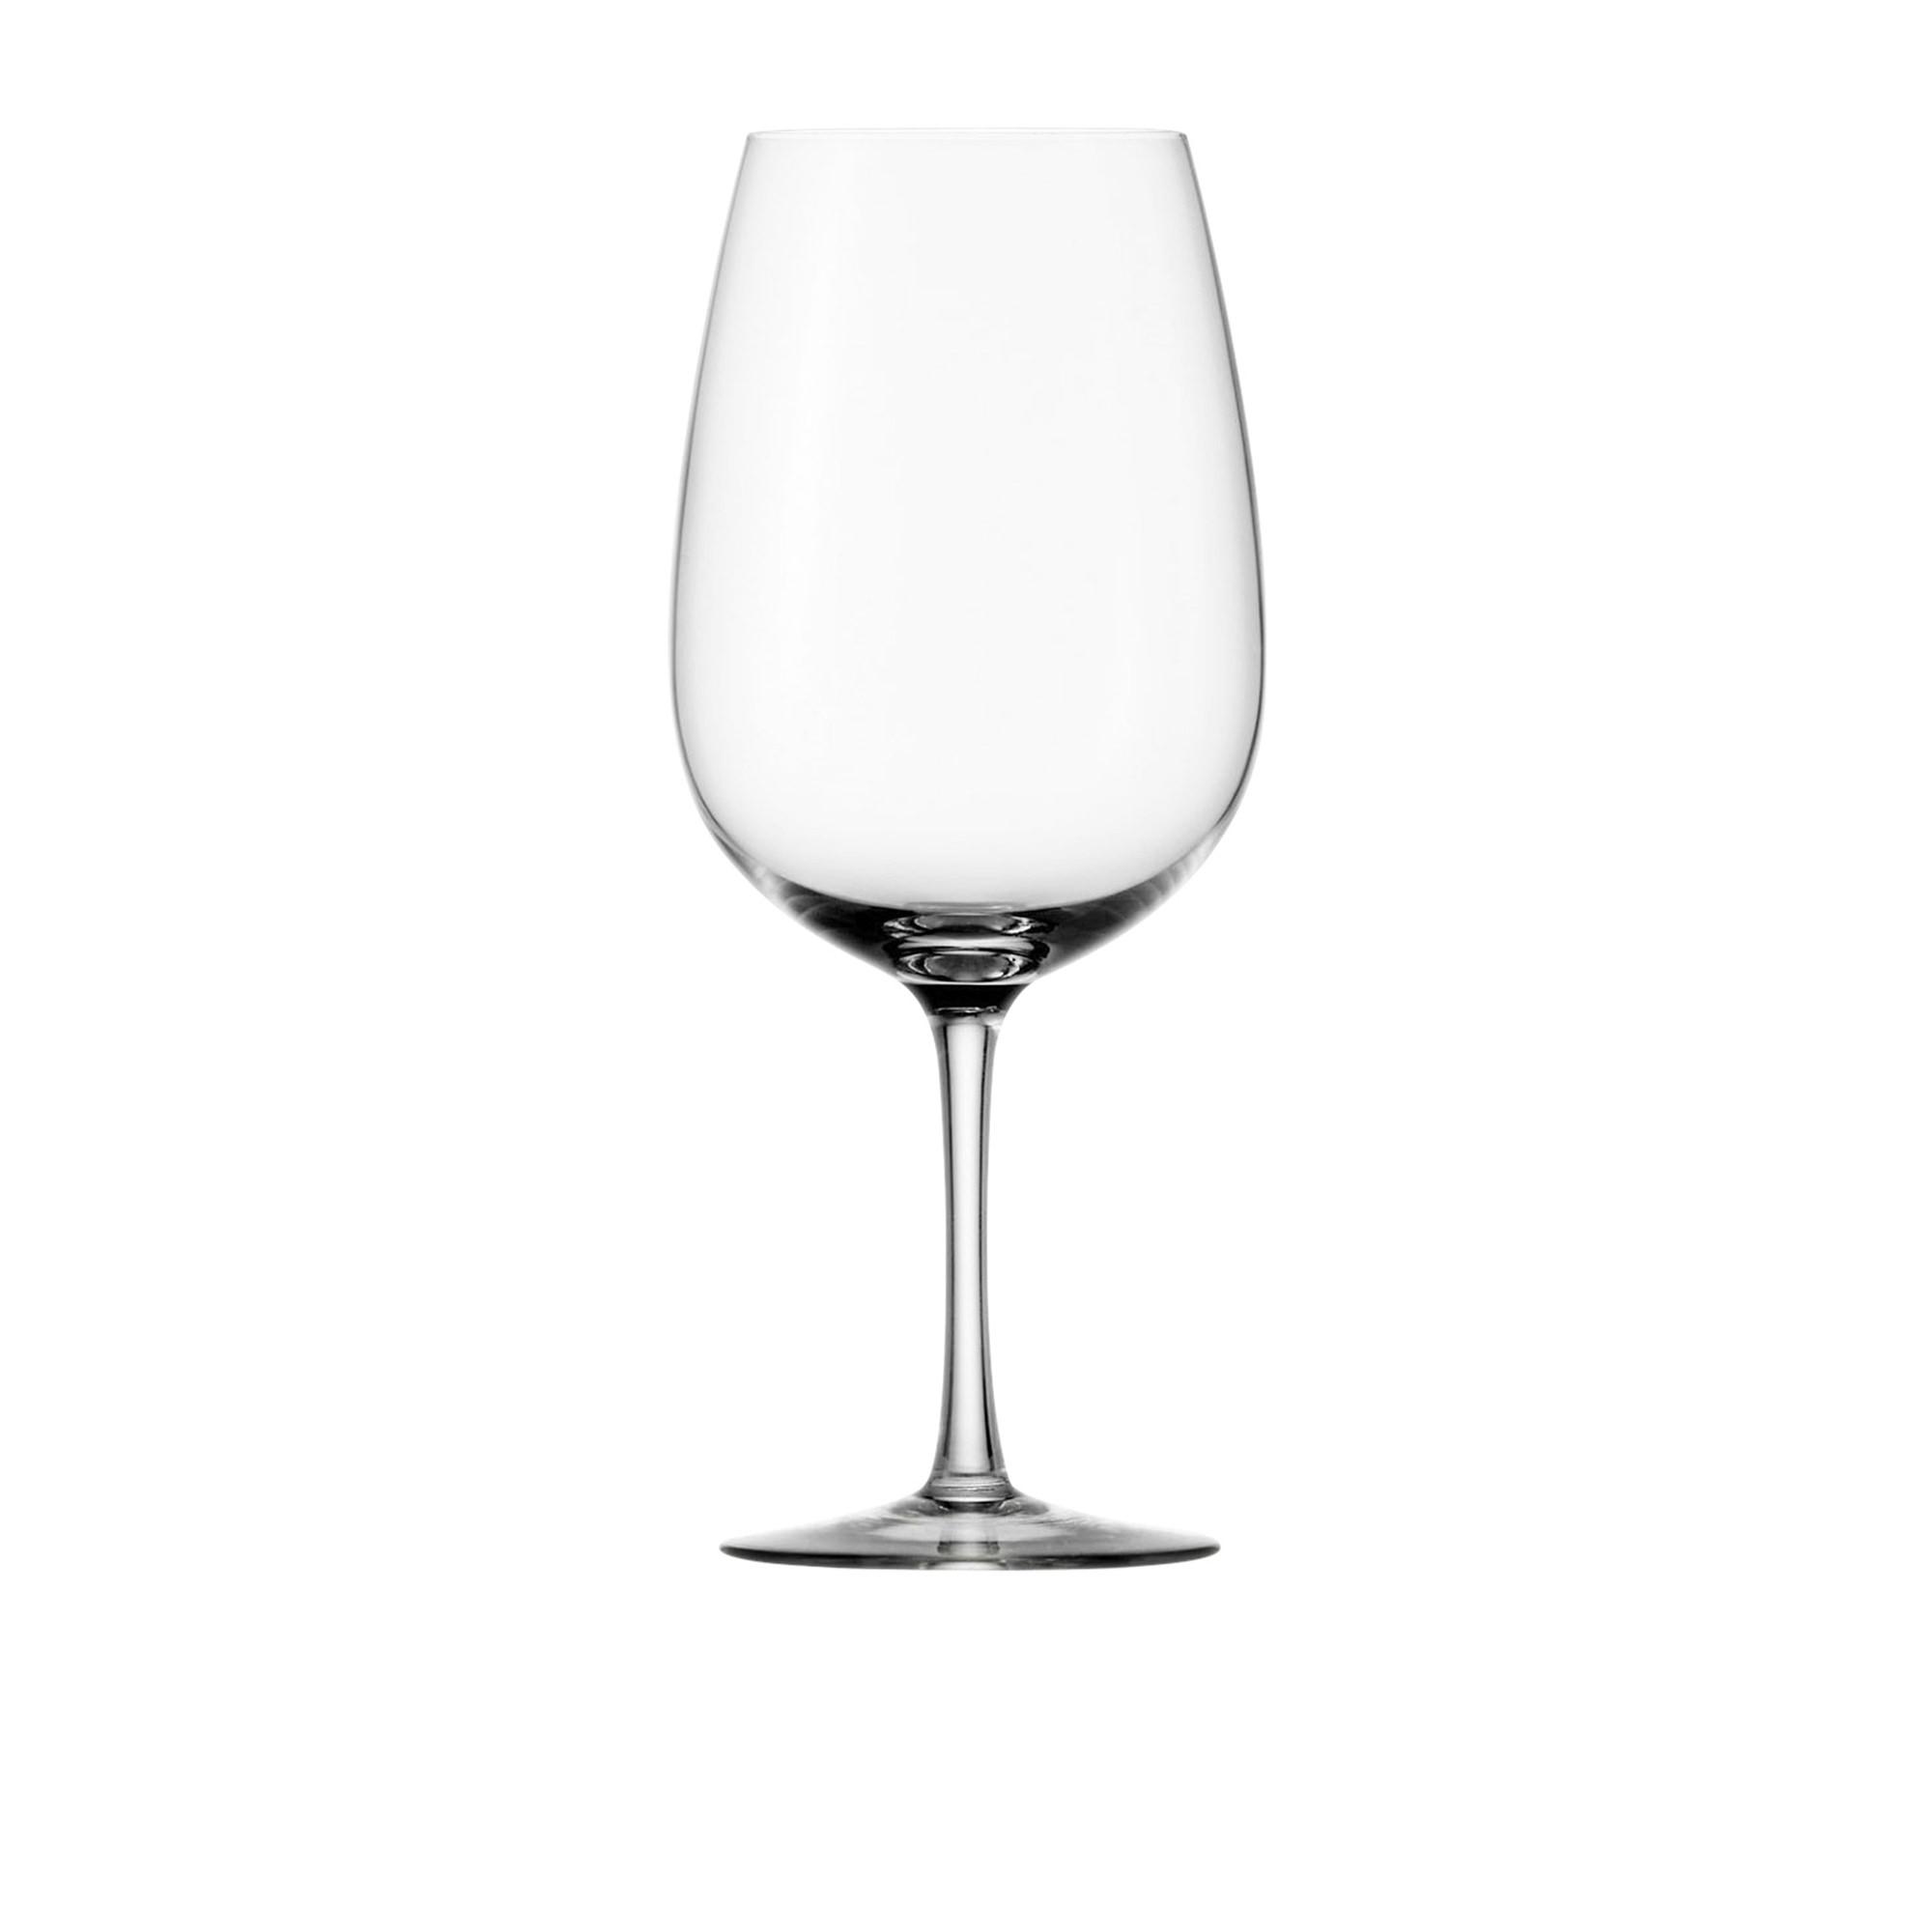 Stolzle Weinland Bordeaux Wine Glass 660ml Set of 6 Image 2